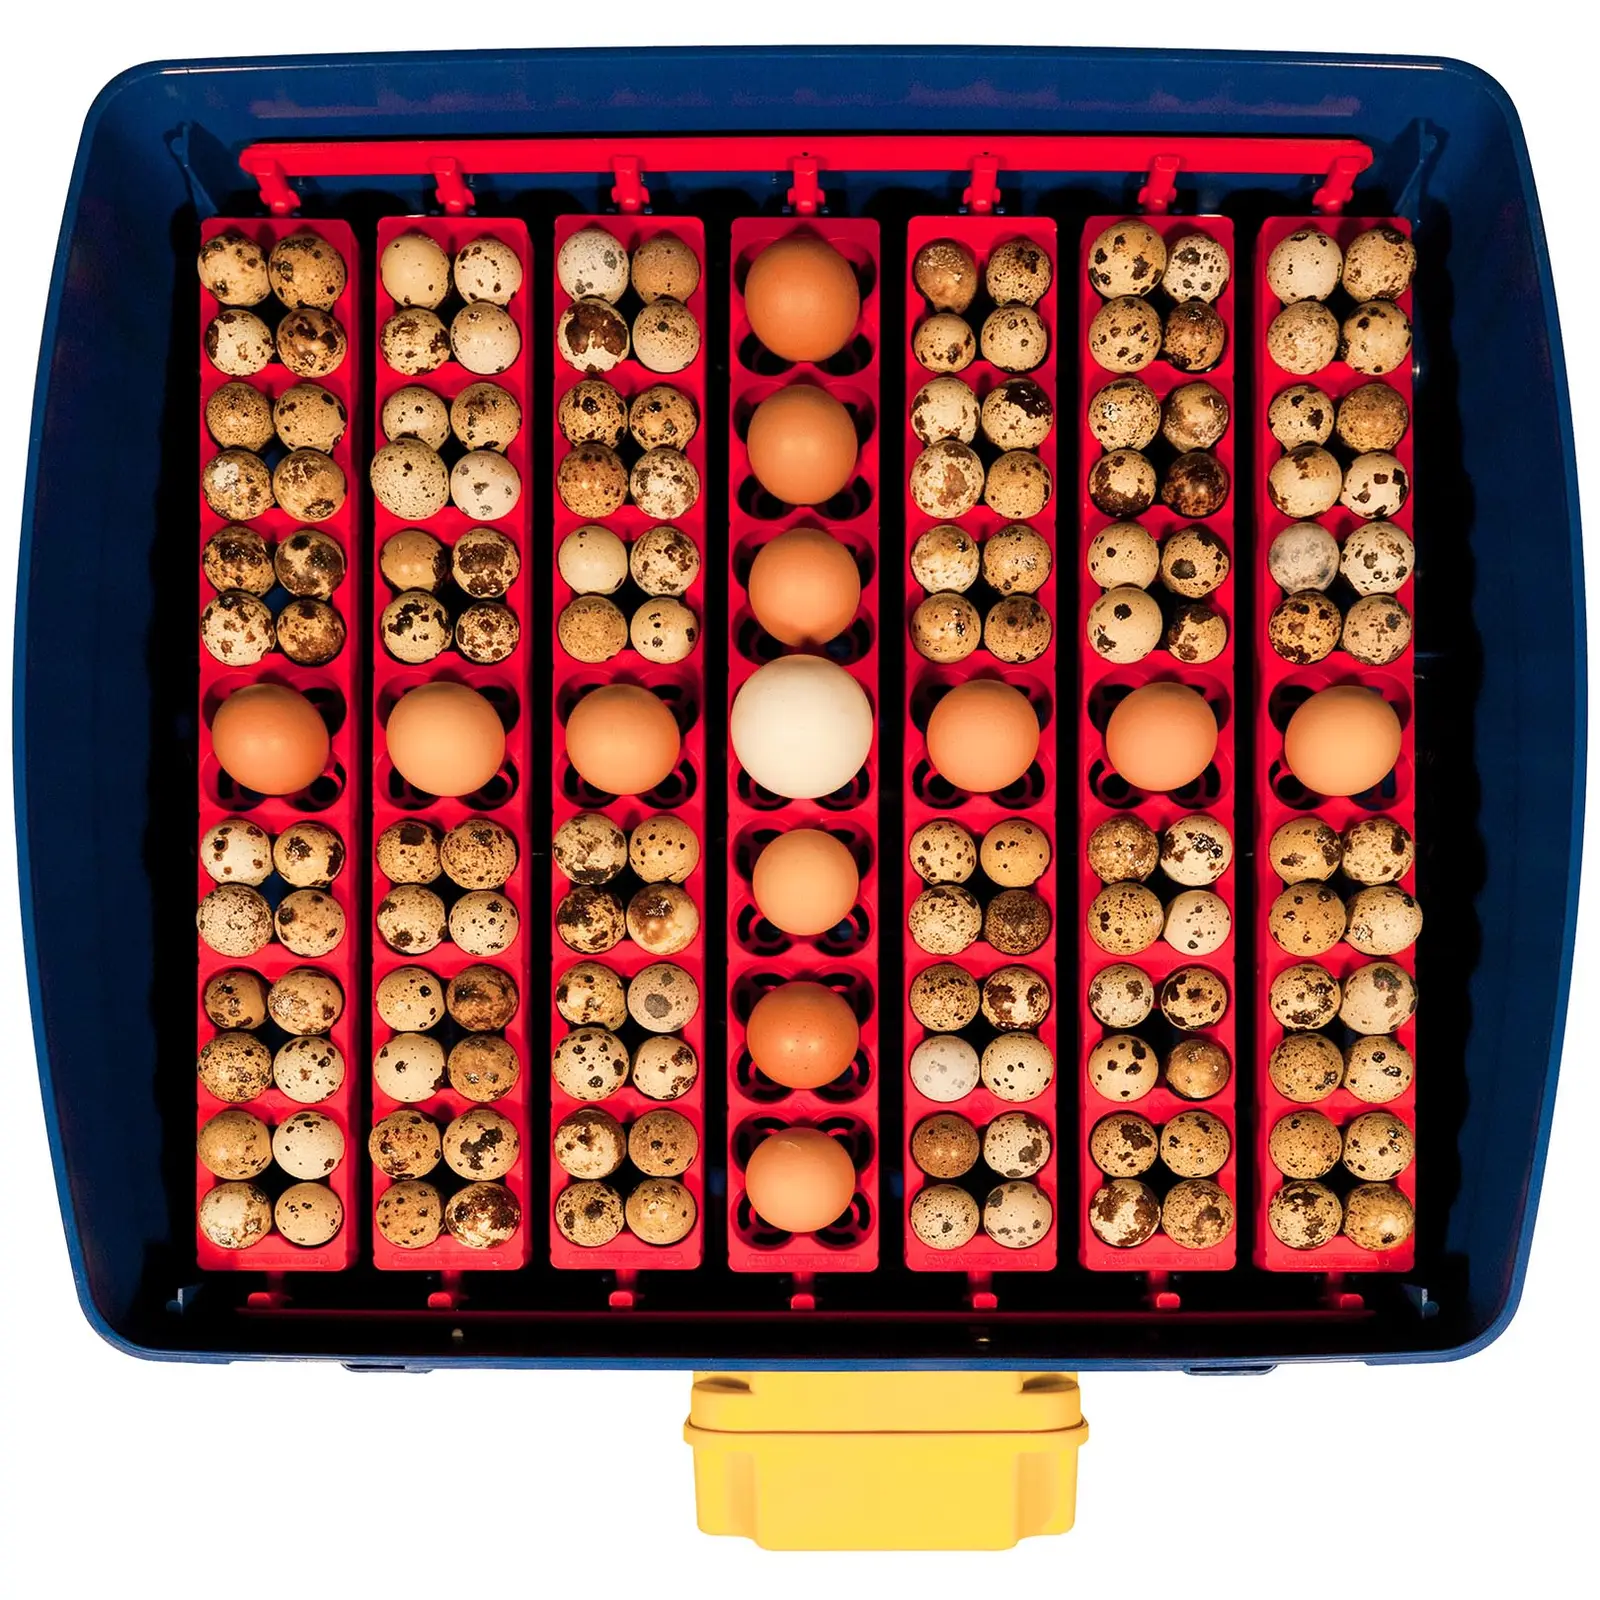 Umelá liaheň na vajcia - 49 vajec - vrátane zvlhčovacieho systému - plne automatická